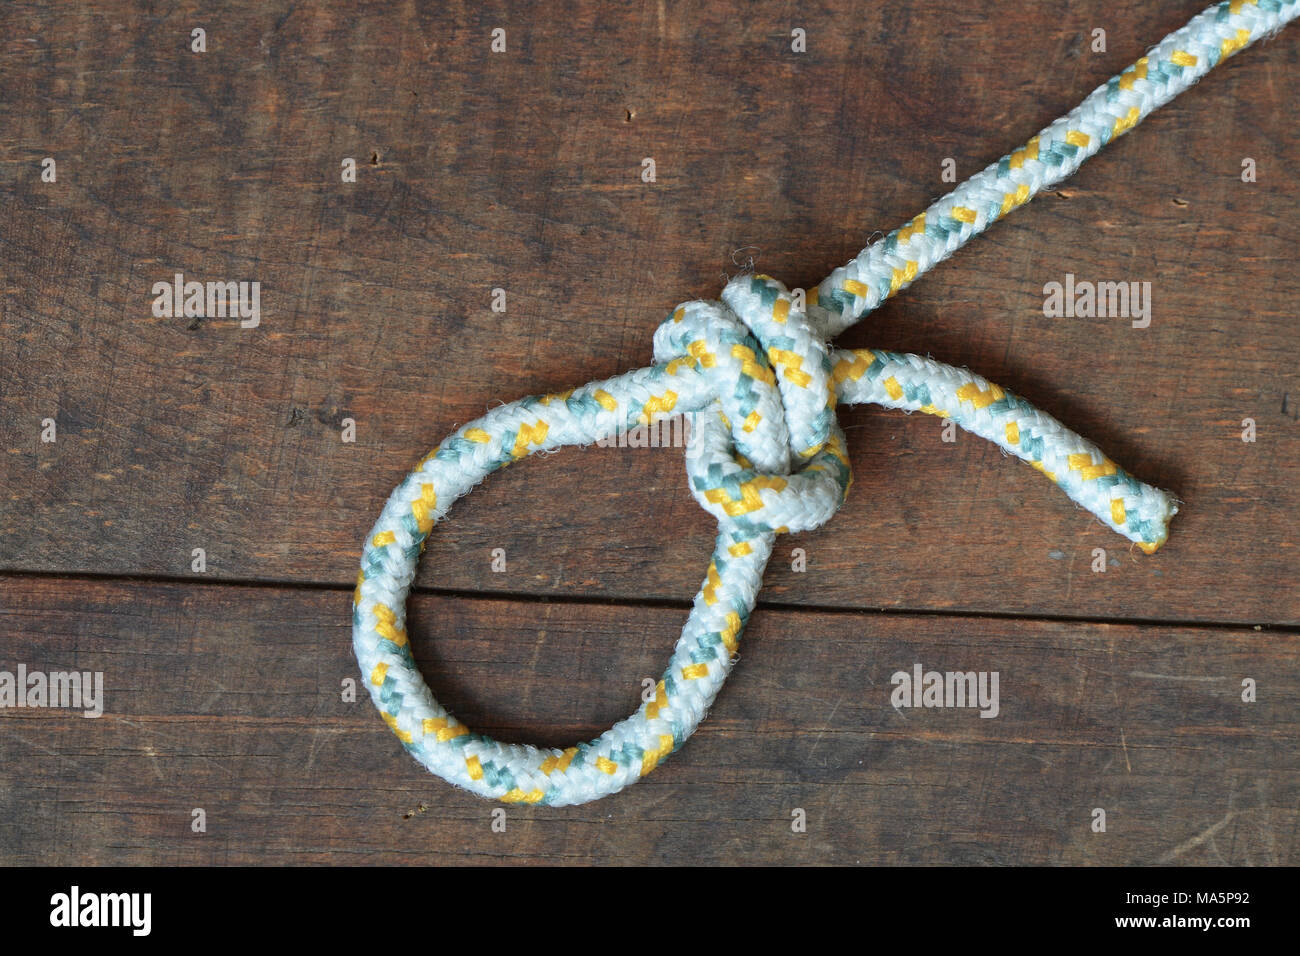 Corde avec noeud et boucle allongée sur fond de bois Banque D'Images